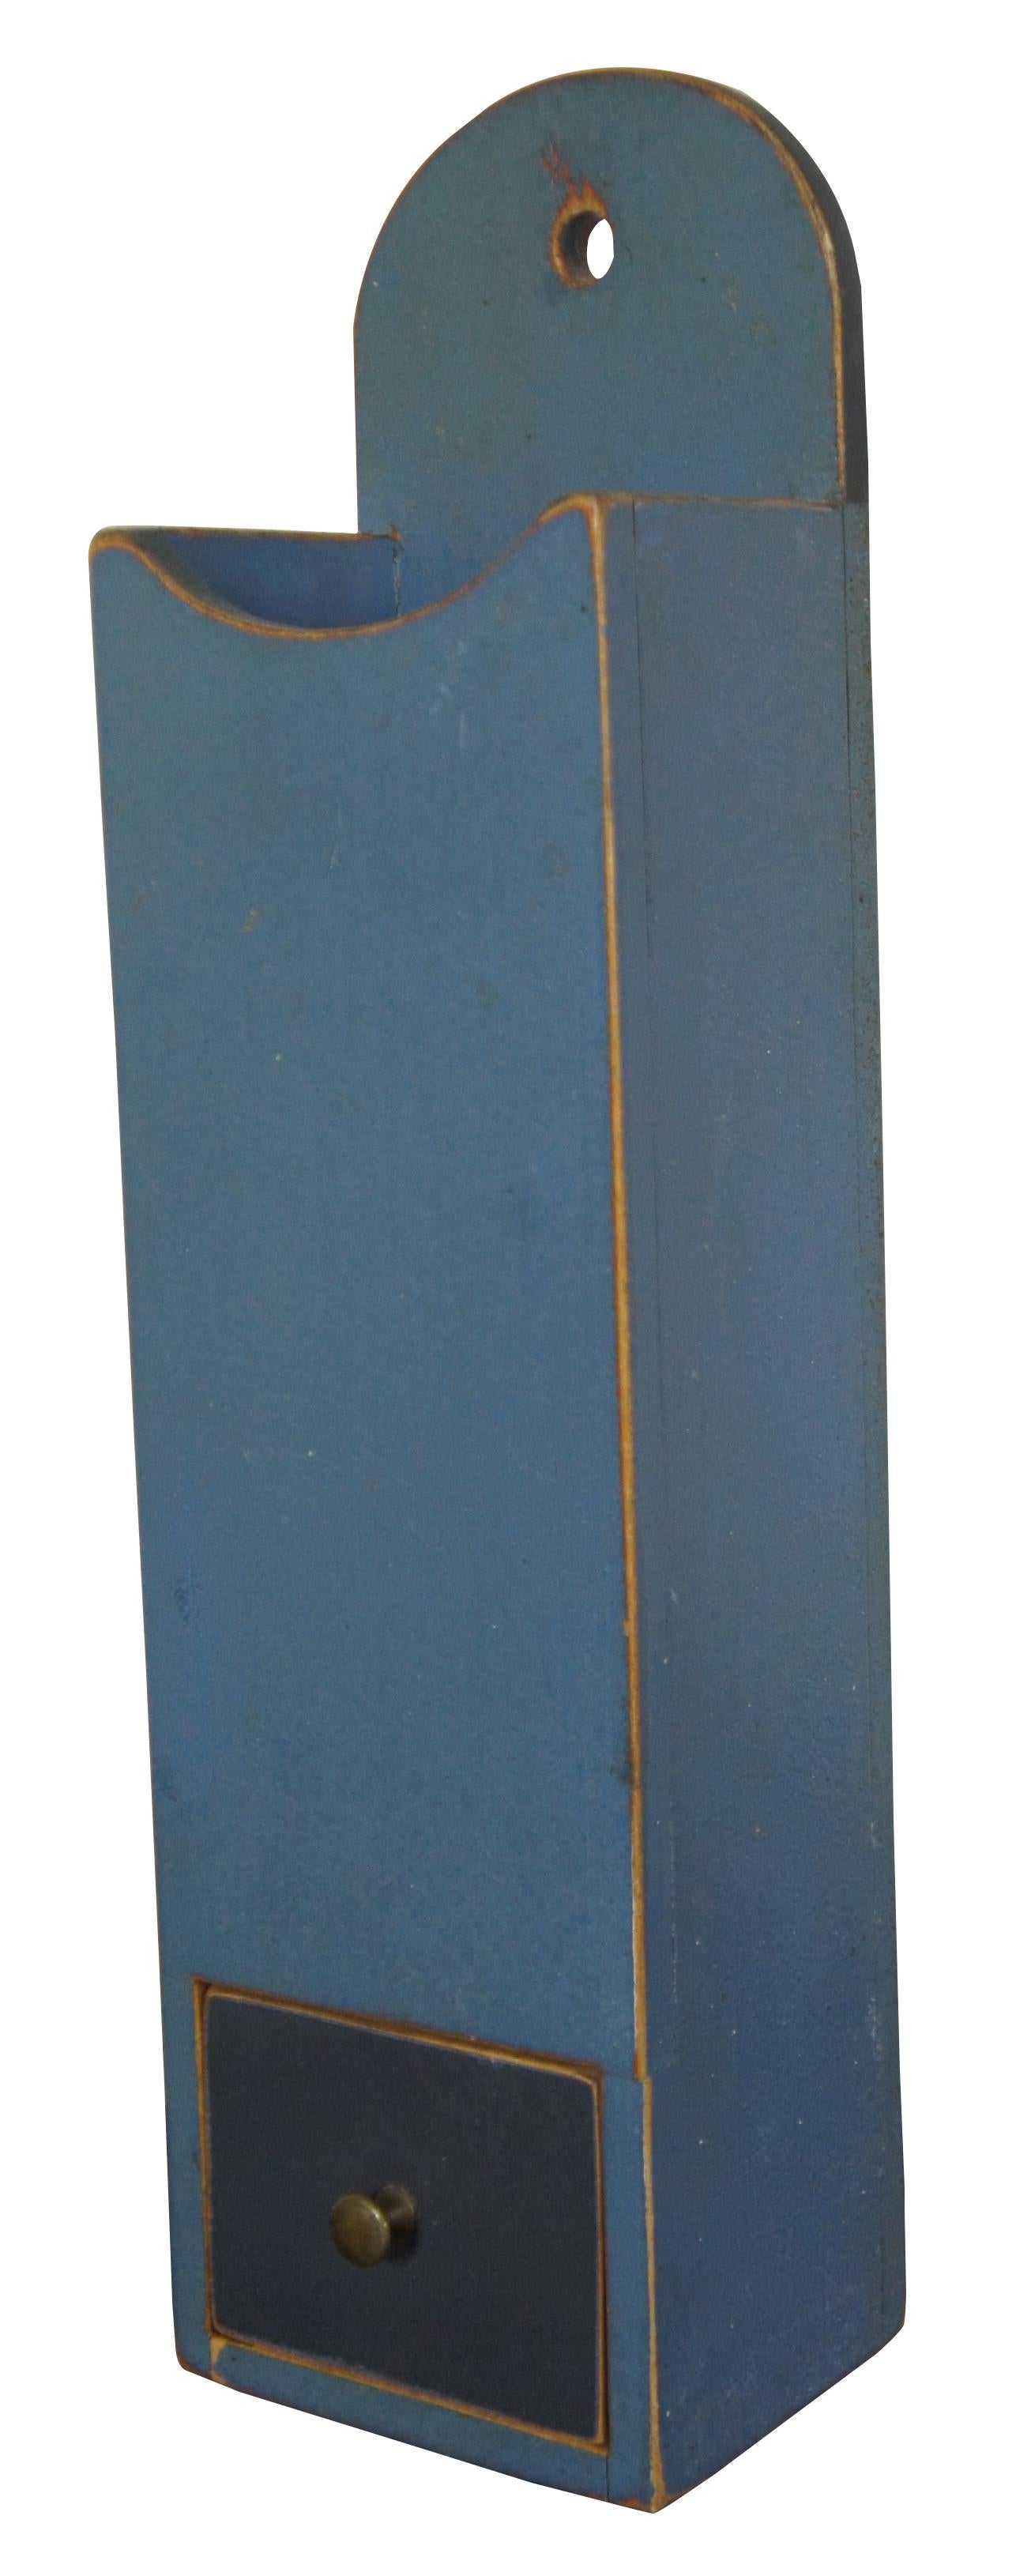 Vintage-Pappel-Pfeifenkasten mit Schublade (Nr. 42), von David T. Smith Cabinetmakers, ca. 1980er Jahre. David T. Smith spezialisierte sich auf Reproduktionen aus der amerikanischen Kolonialzeit unter Verwendung von Methoden und Handwerkern der